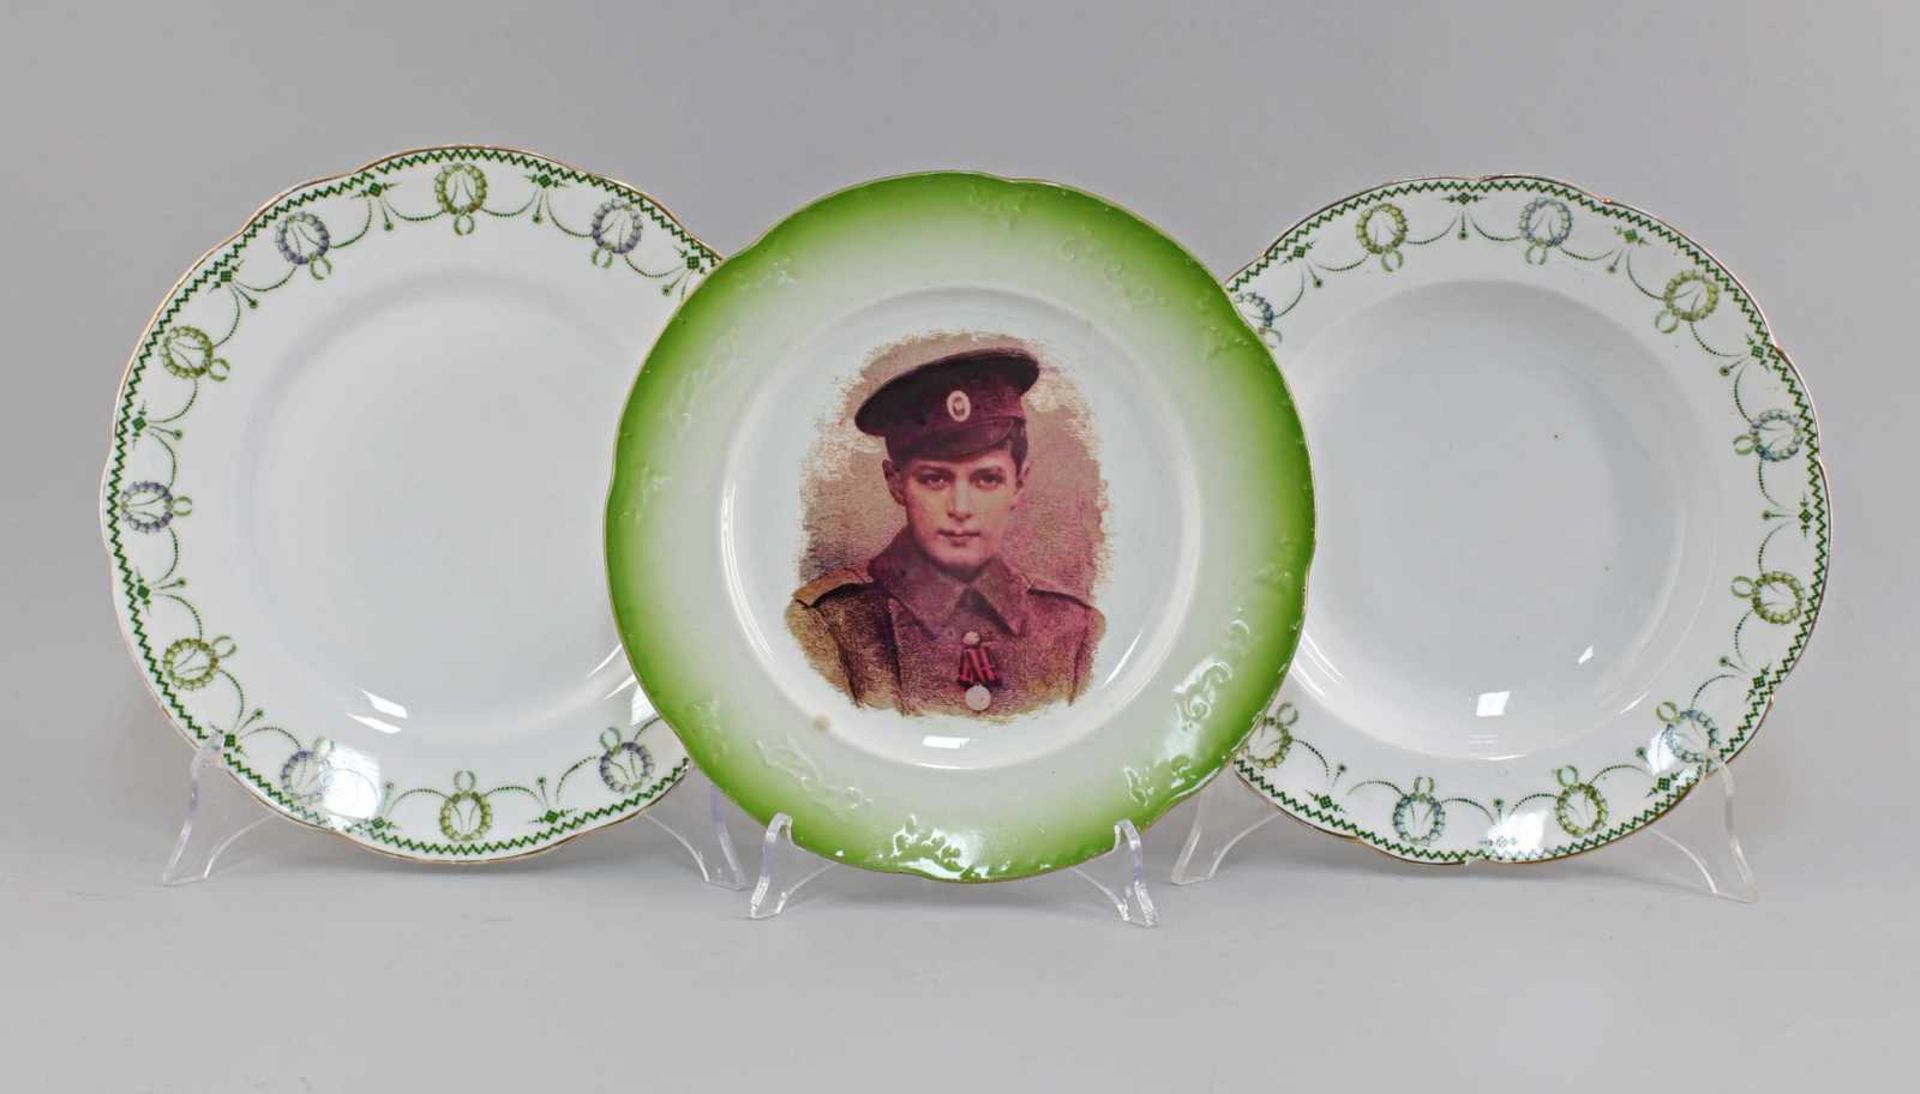 3 Teller Kuznetsov Jugendstilgemarkt Kuznetsov, 1891 - 1917, Russland, Speise- und Suppen-Teller aus